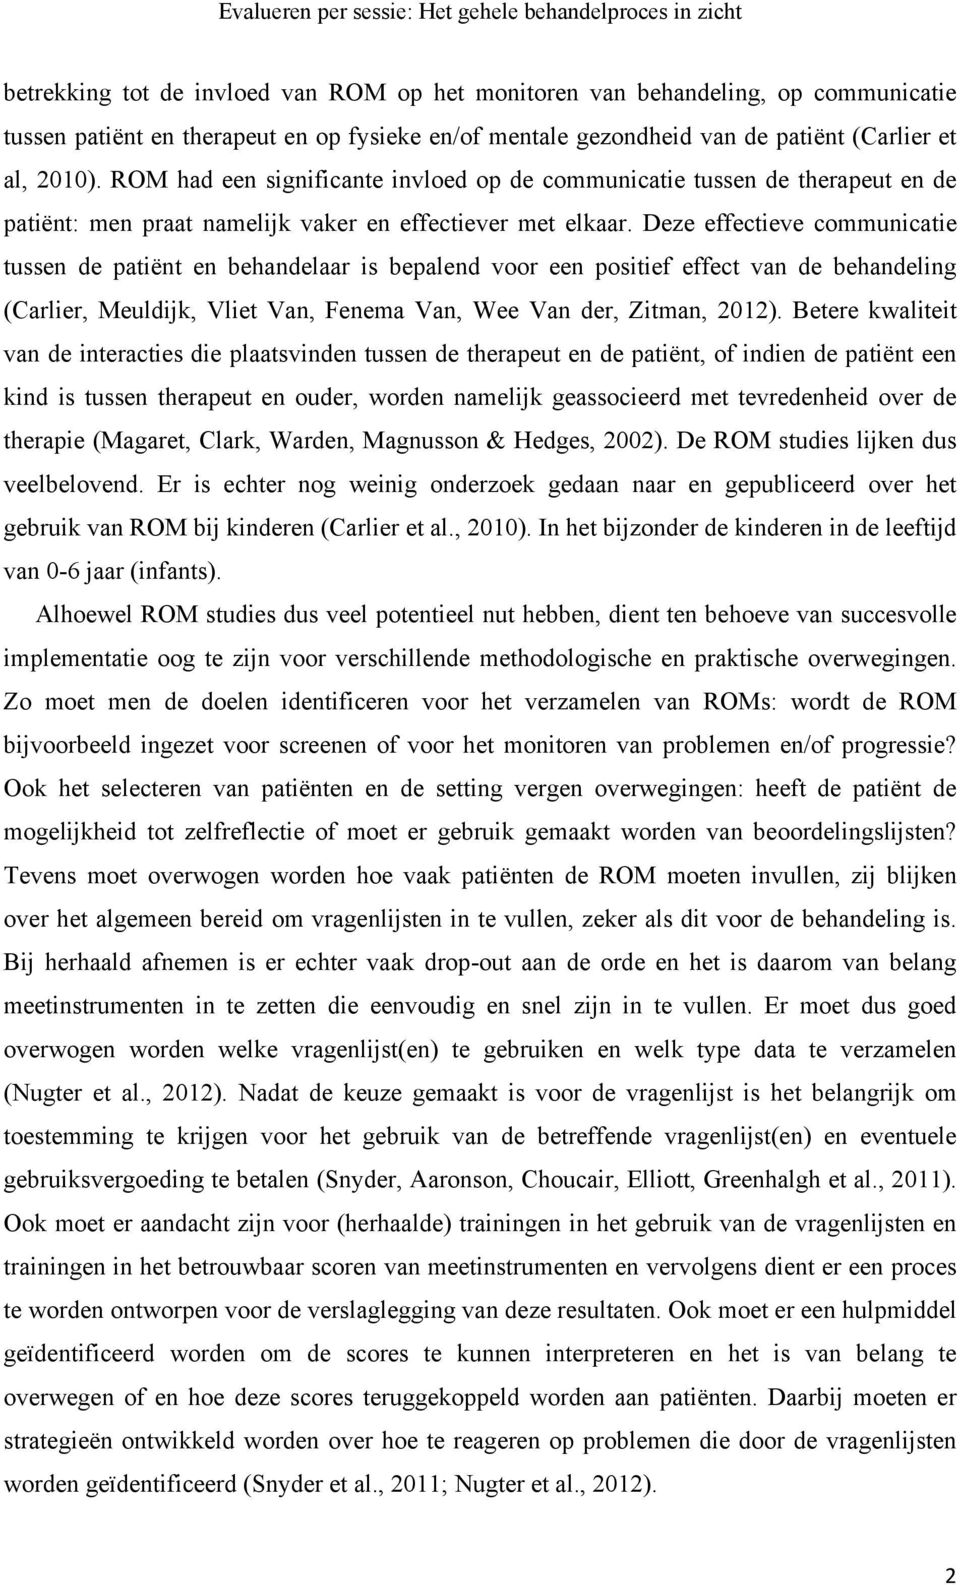 Deze effectieve communicatie tussen de patiënt en behandelaar is bepalend voor een positief effect van de behandeling (Carlier, Meuldijk, Vliet Van, Fenema Van, Wee Van der, Zitman, 2012).